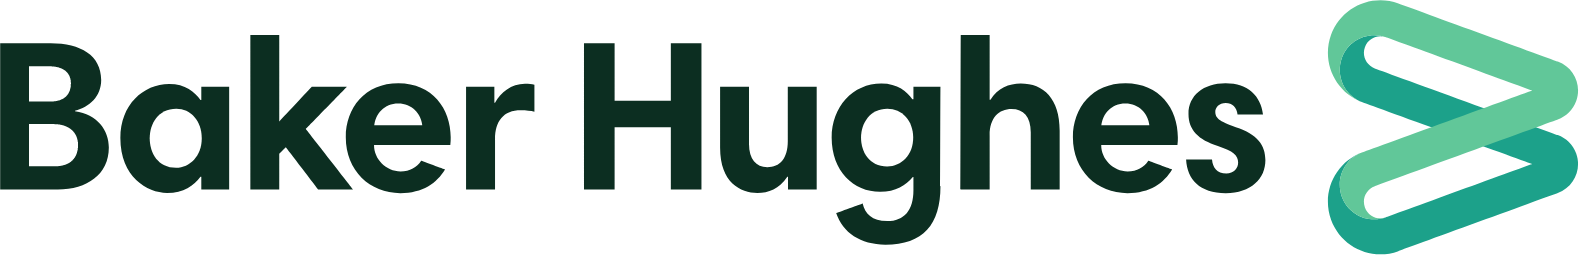 Baker Hughes
 logo large (transparent PNG)